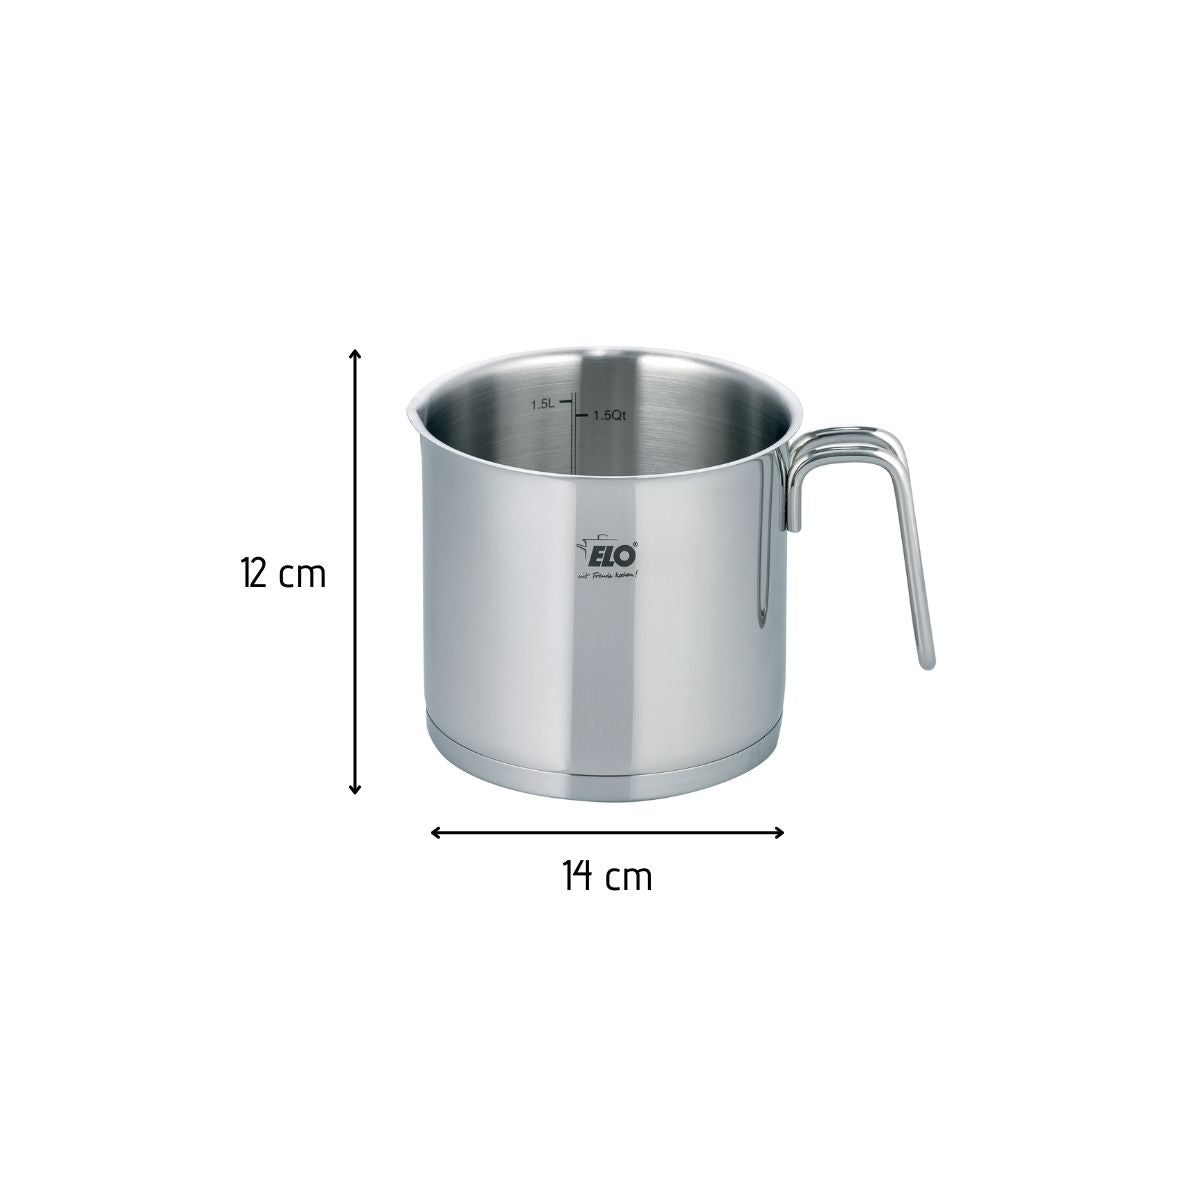 Pot à lait - Pot à lait en acier inoxydable pour faire mousser